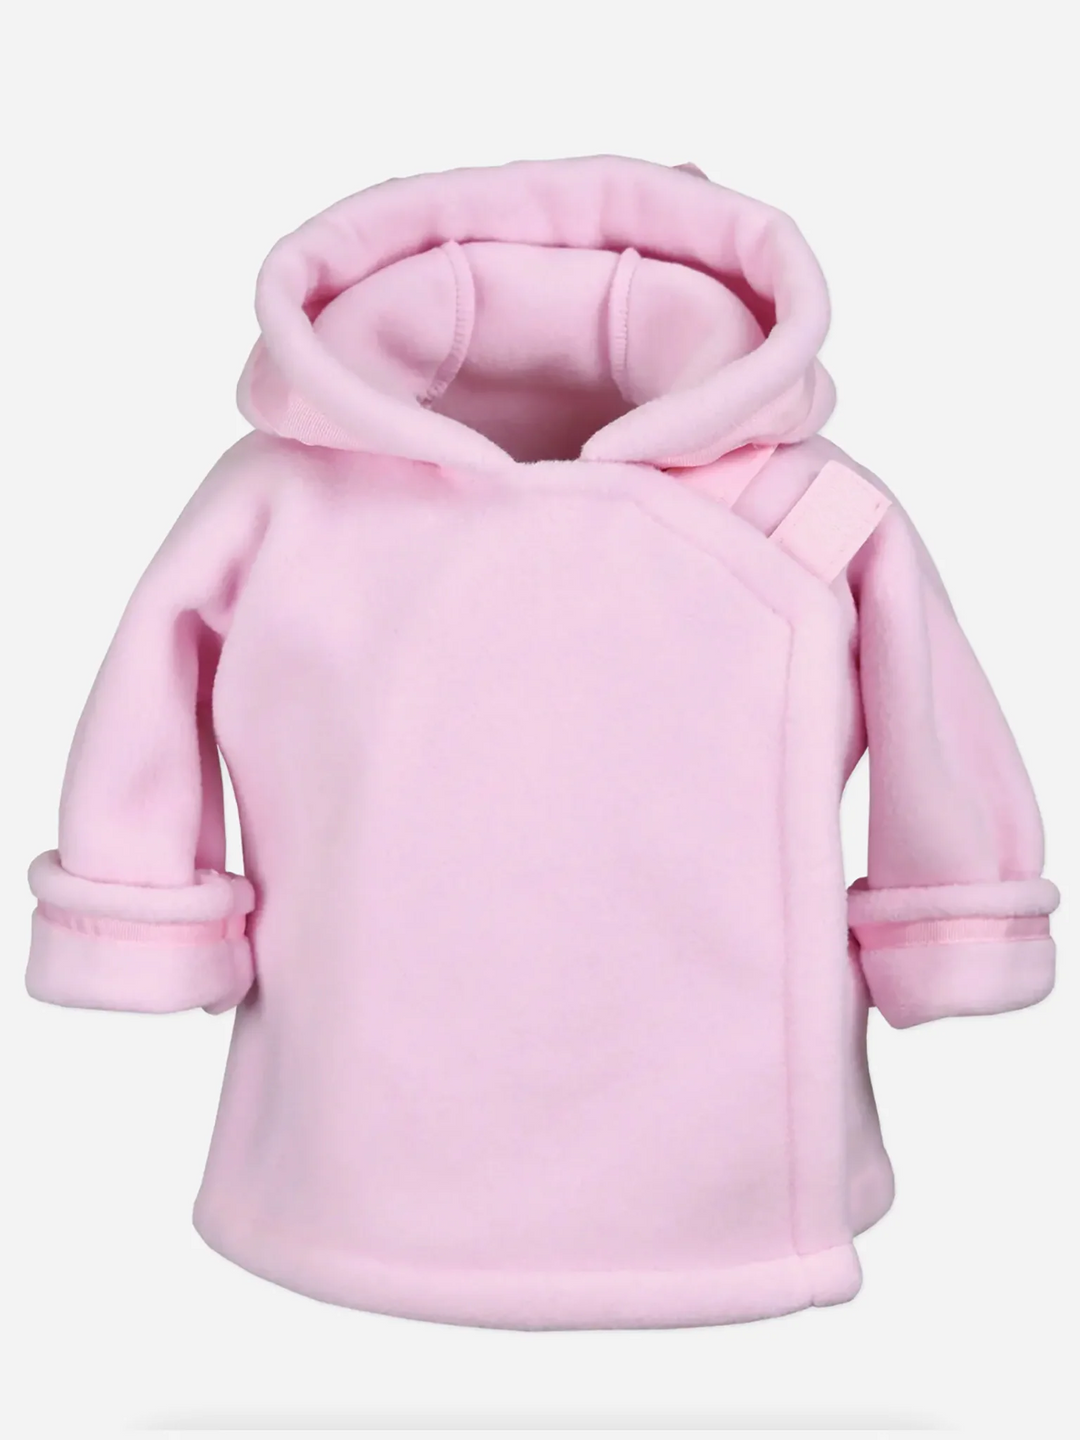 Widgeon Fleece Jacket- Light Pink